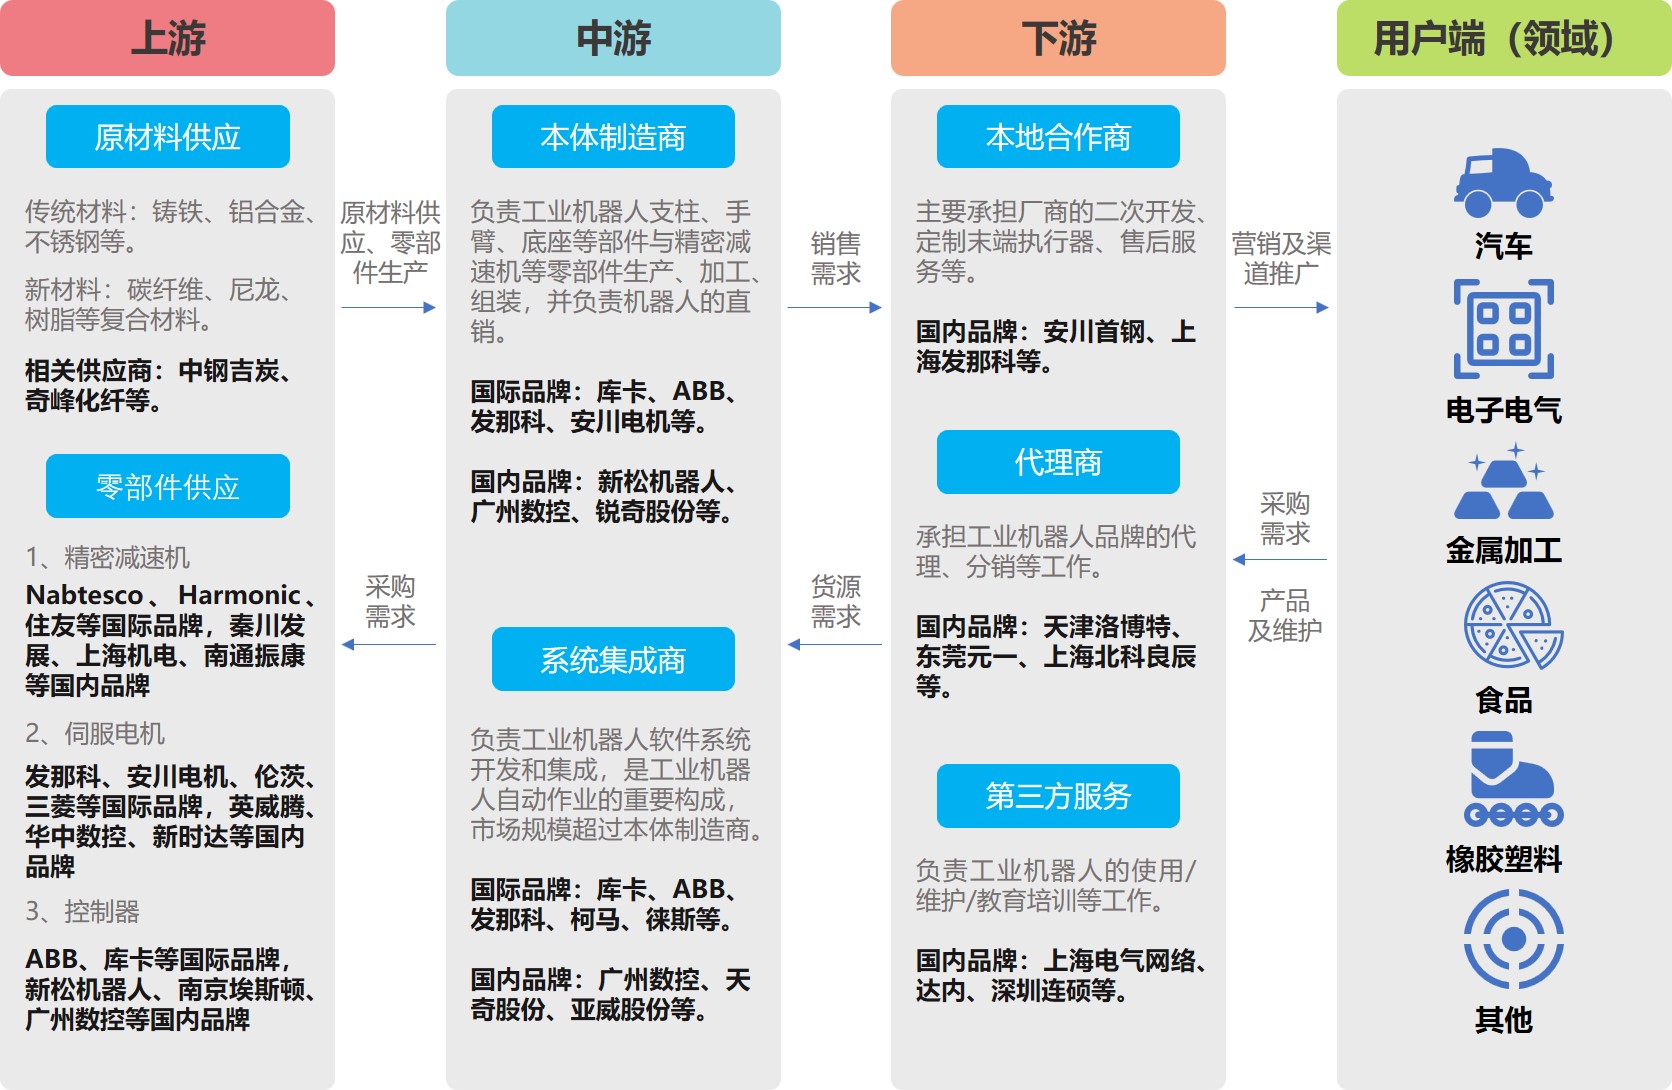 示例_工业机器人产业链分析图,数之信南京市场调查公司工业品市场发展机会及潜力研究整体解决方案